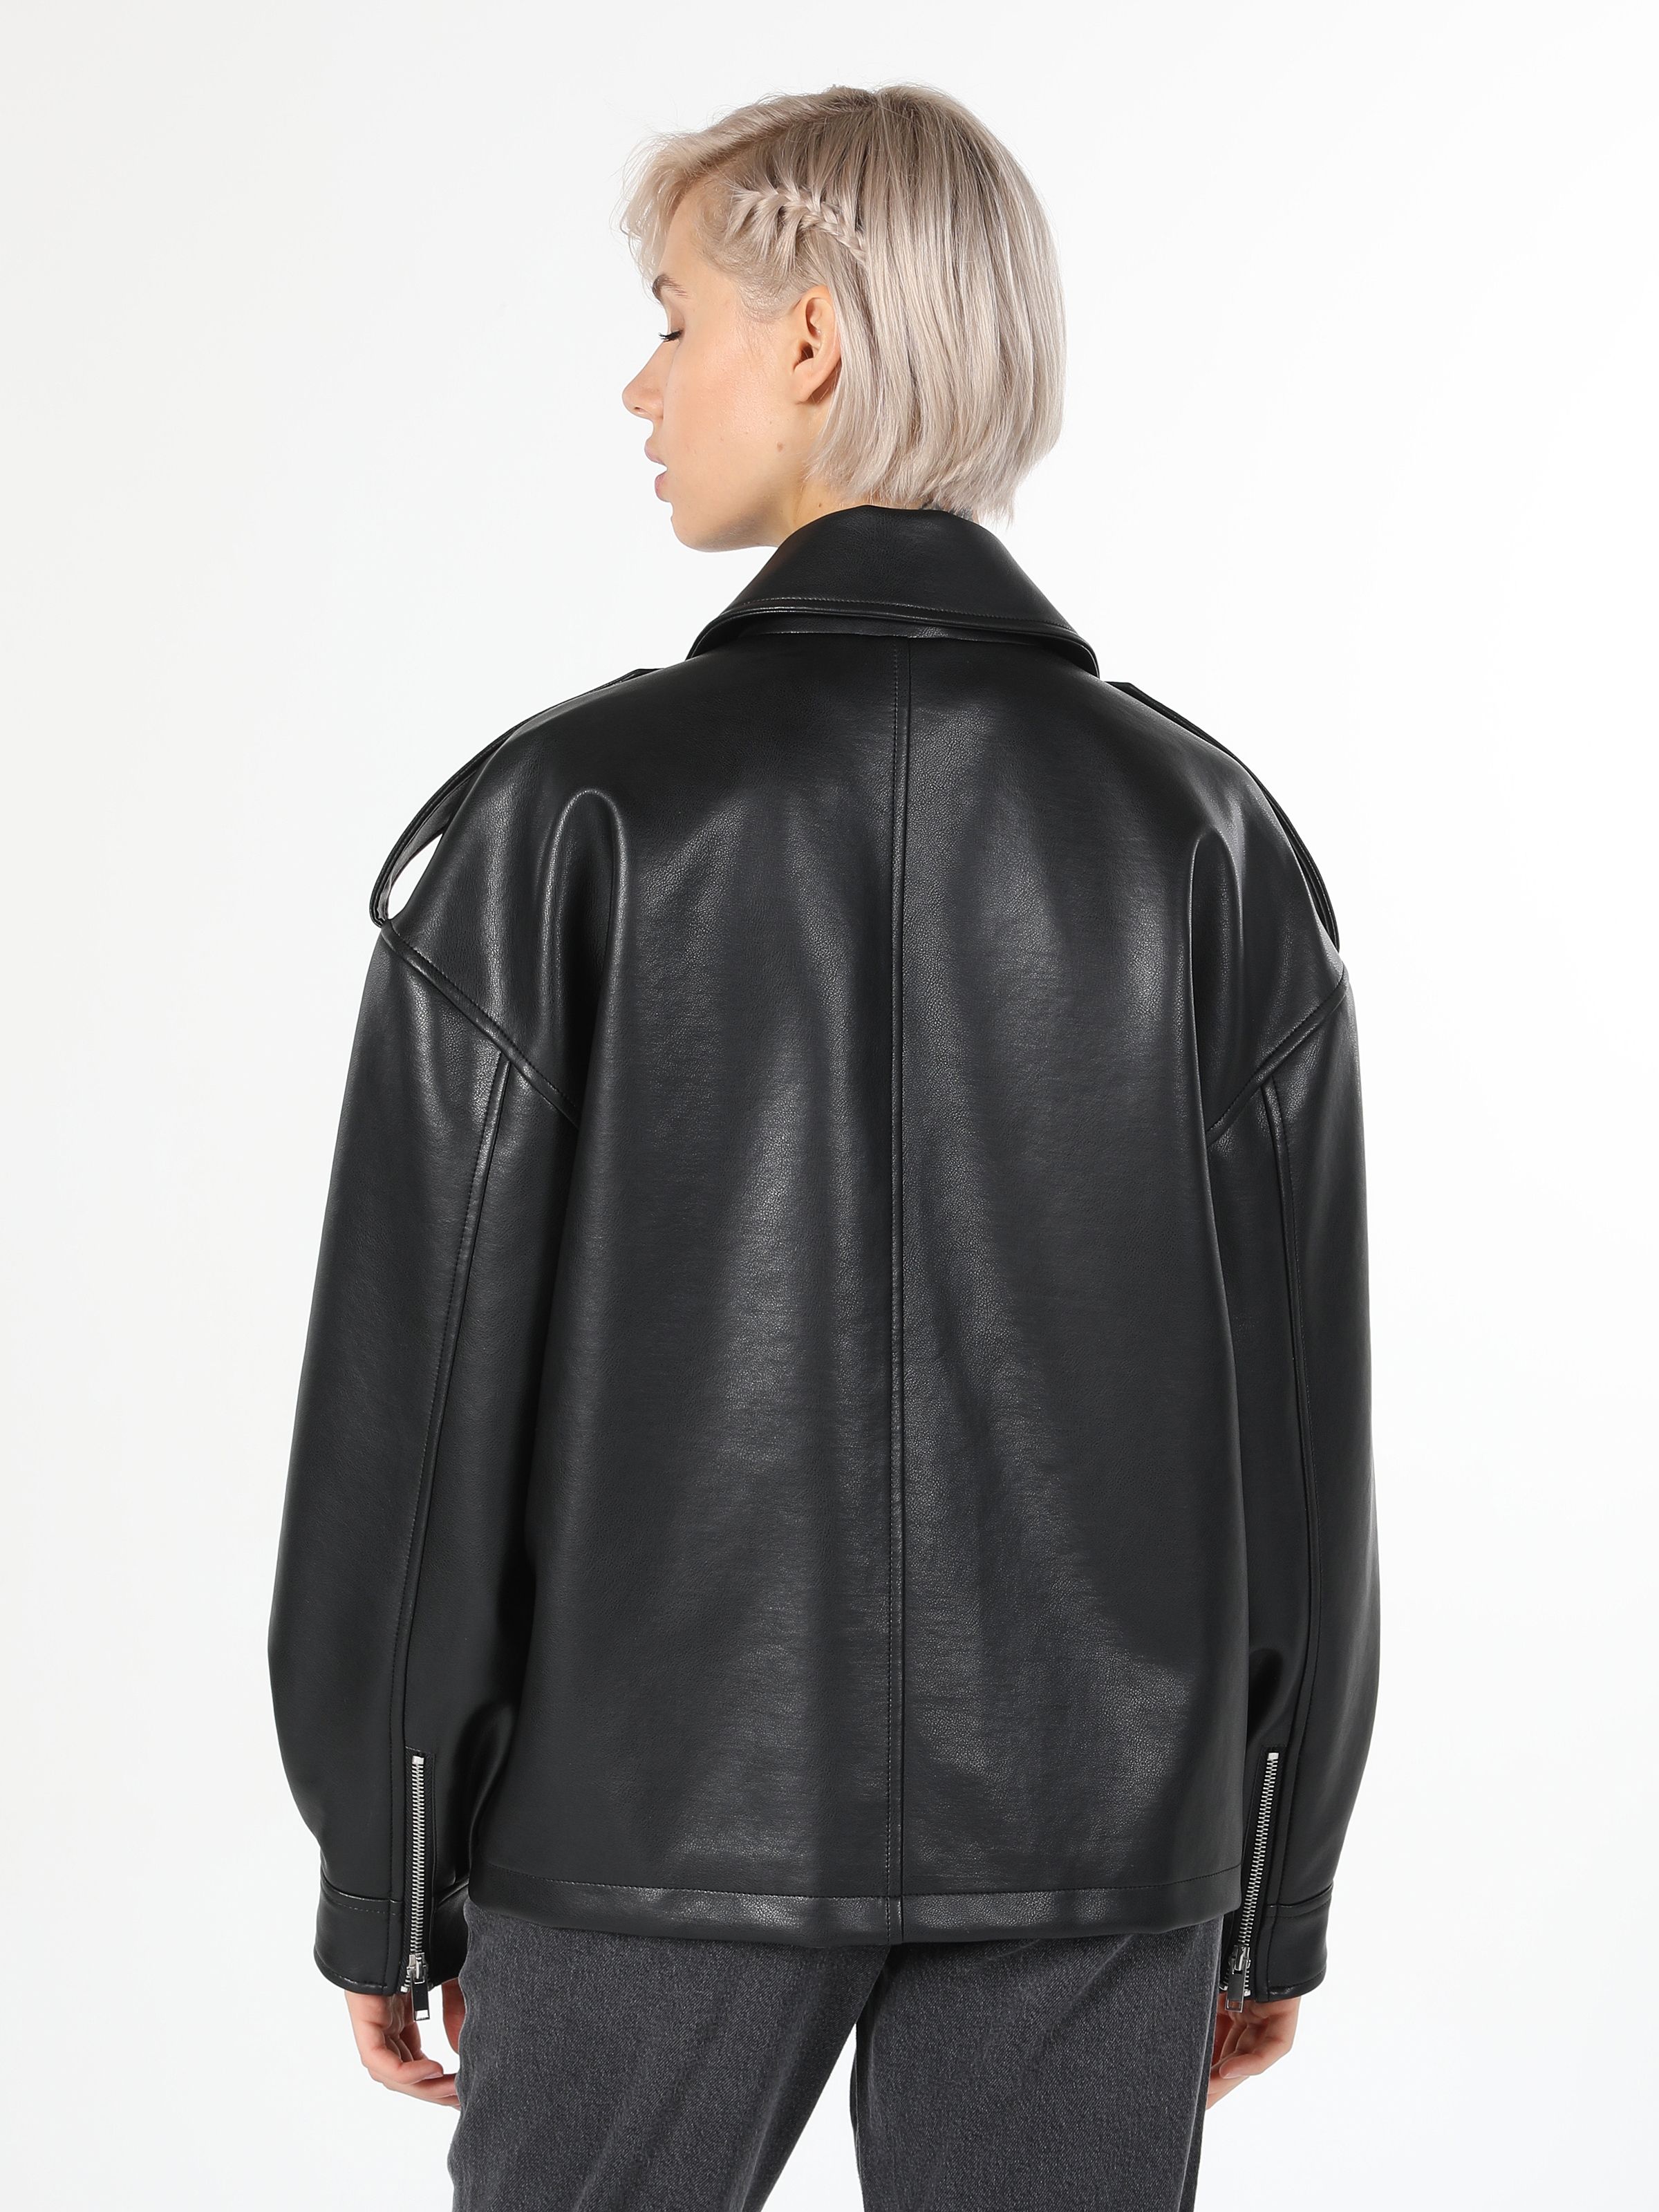 Afficher les détails de Manteau Femme Noir Coupe Normale Simili Cuir Coupe Régulière Pu